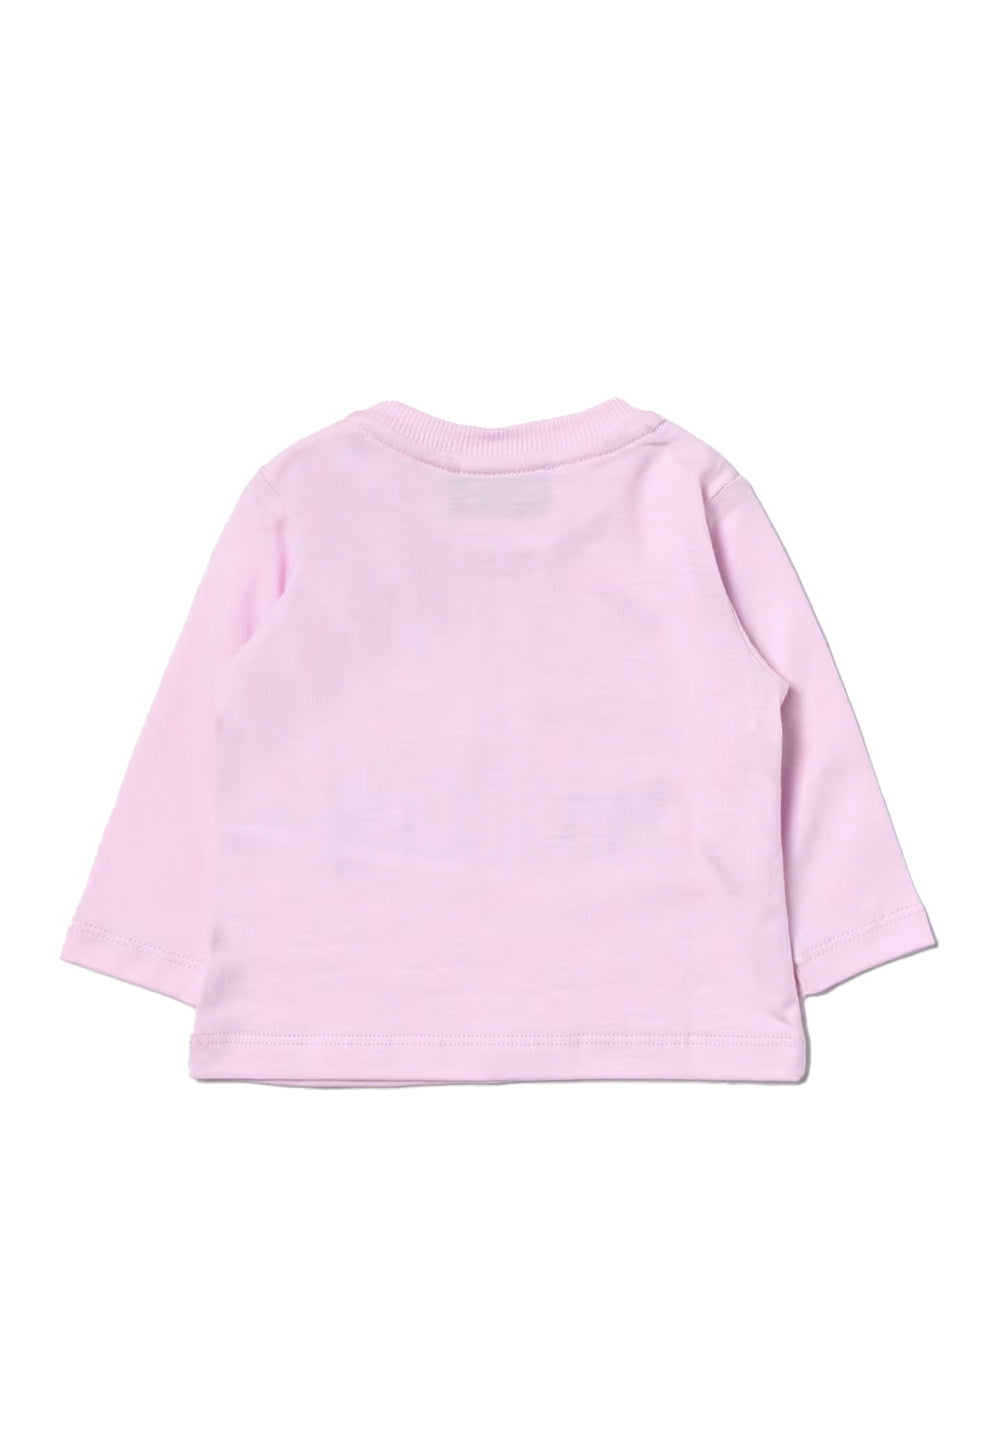 Rosa T-Shirt für Mädchen